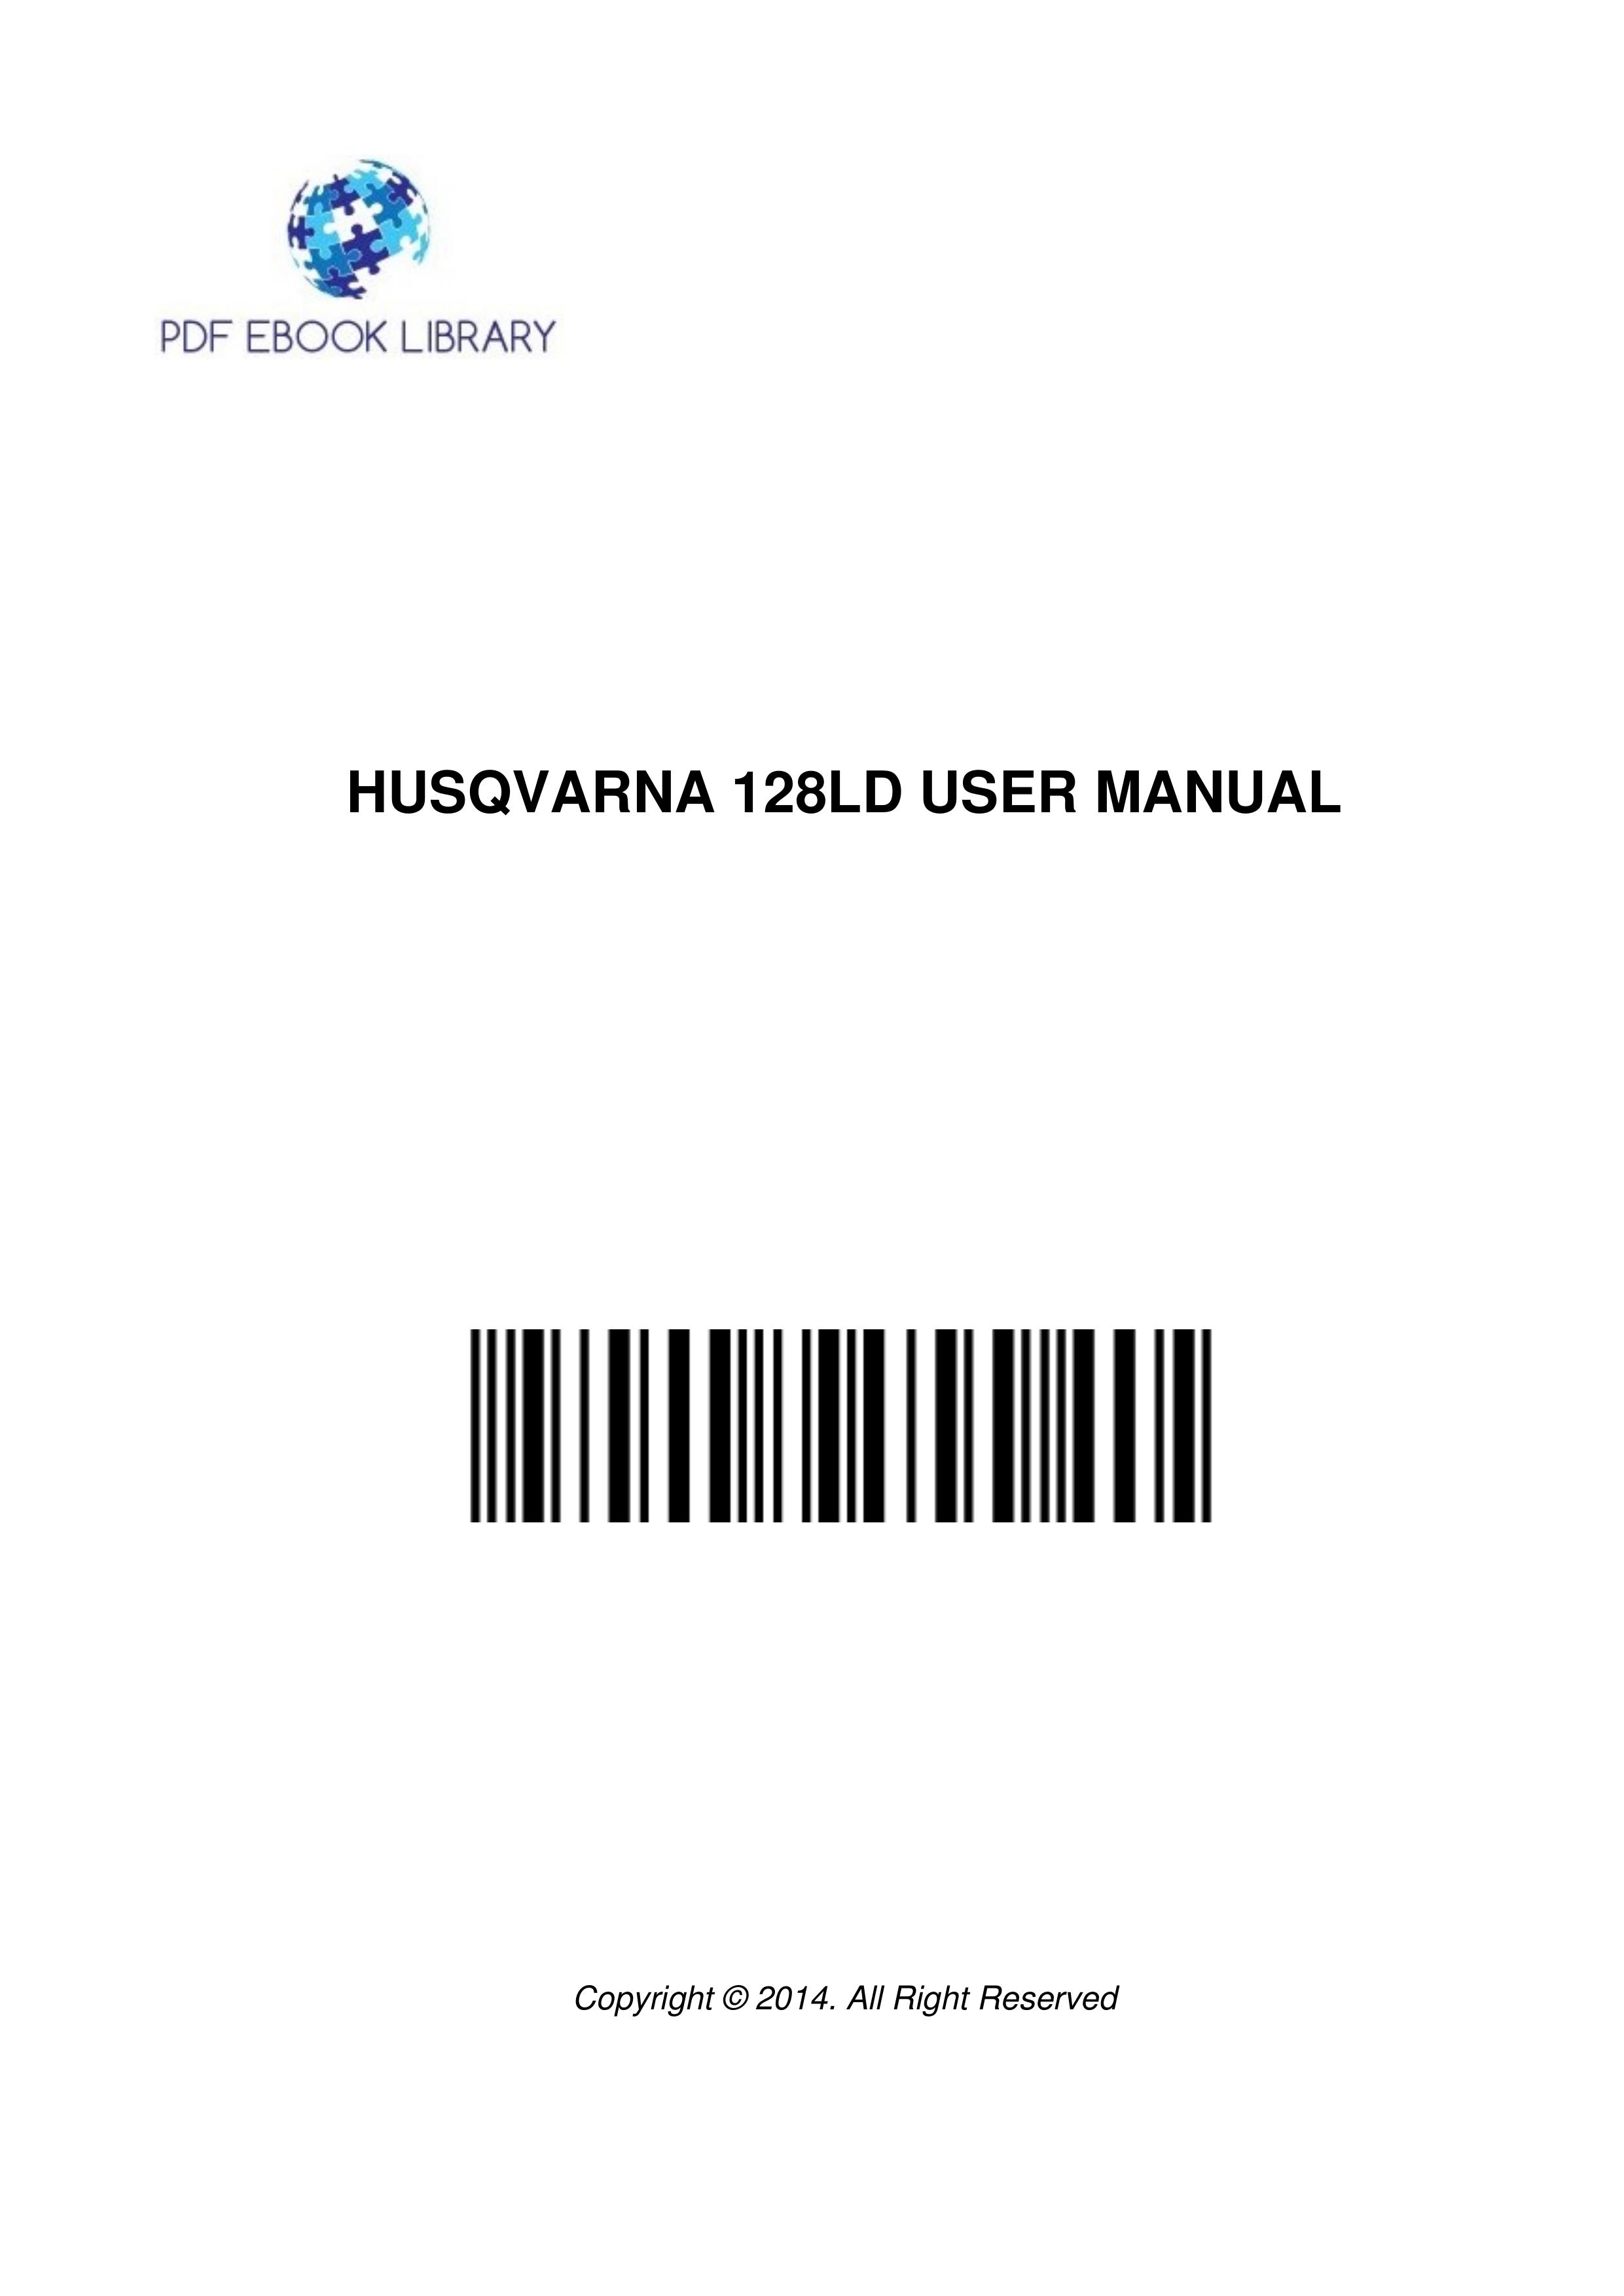 Husqvarna 128LD Trimmer User Manual